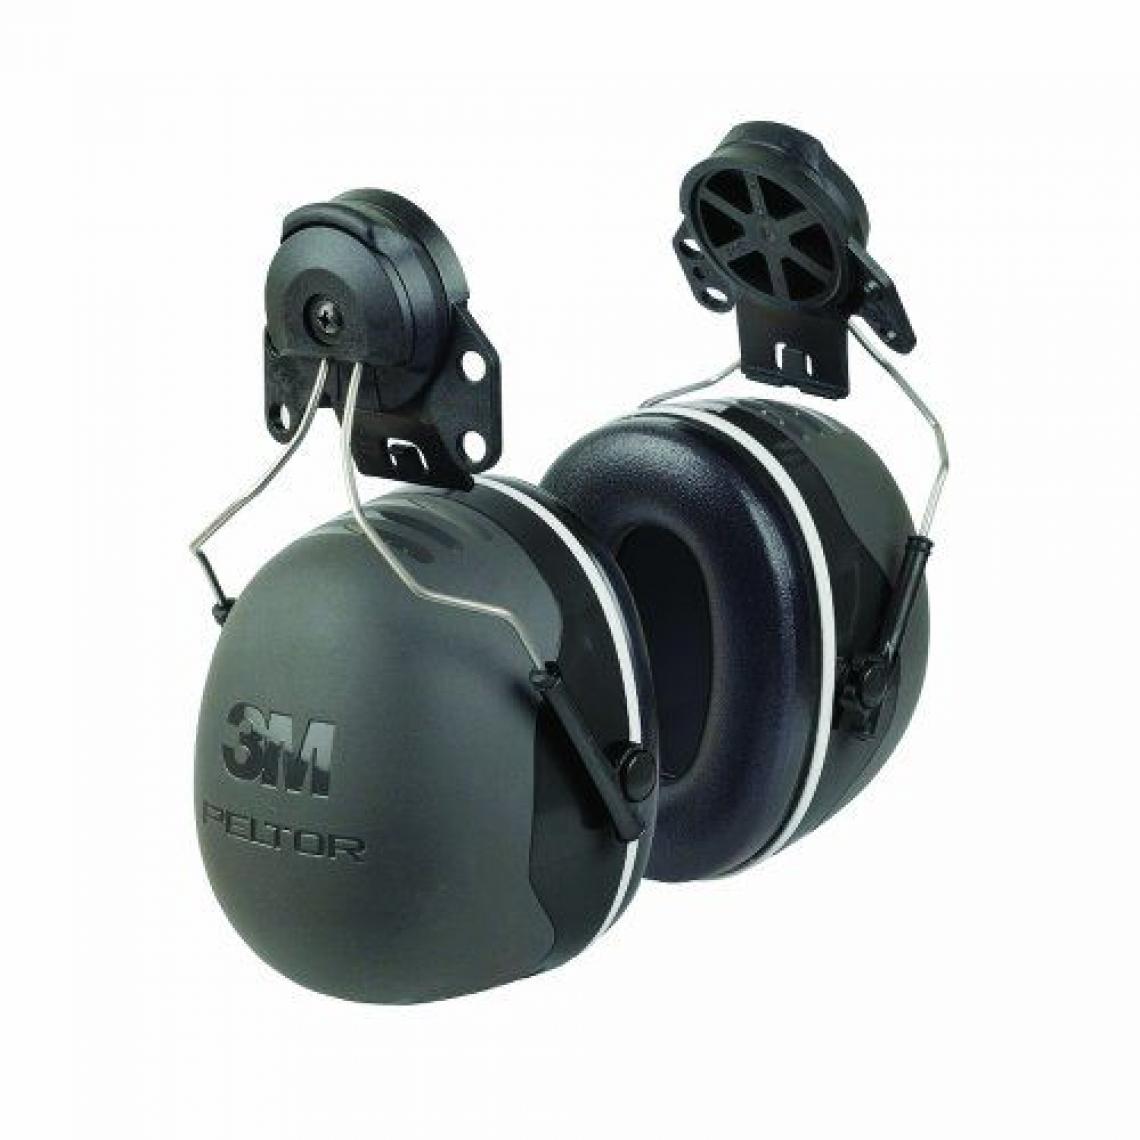 Inconnu - 3M Peltor X5P3E Protections anti-bruit pour casque de chantier SNR 36 dB - Protections tête